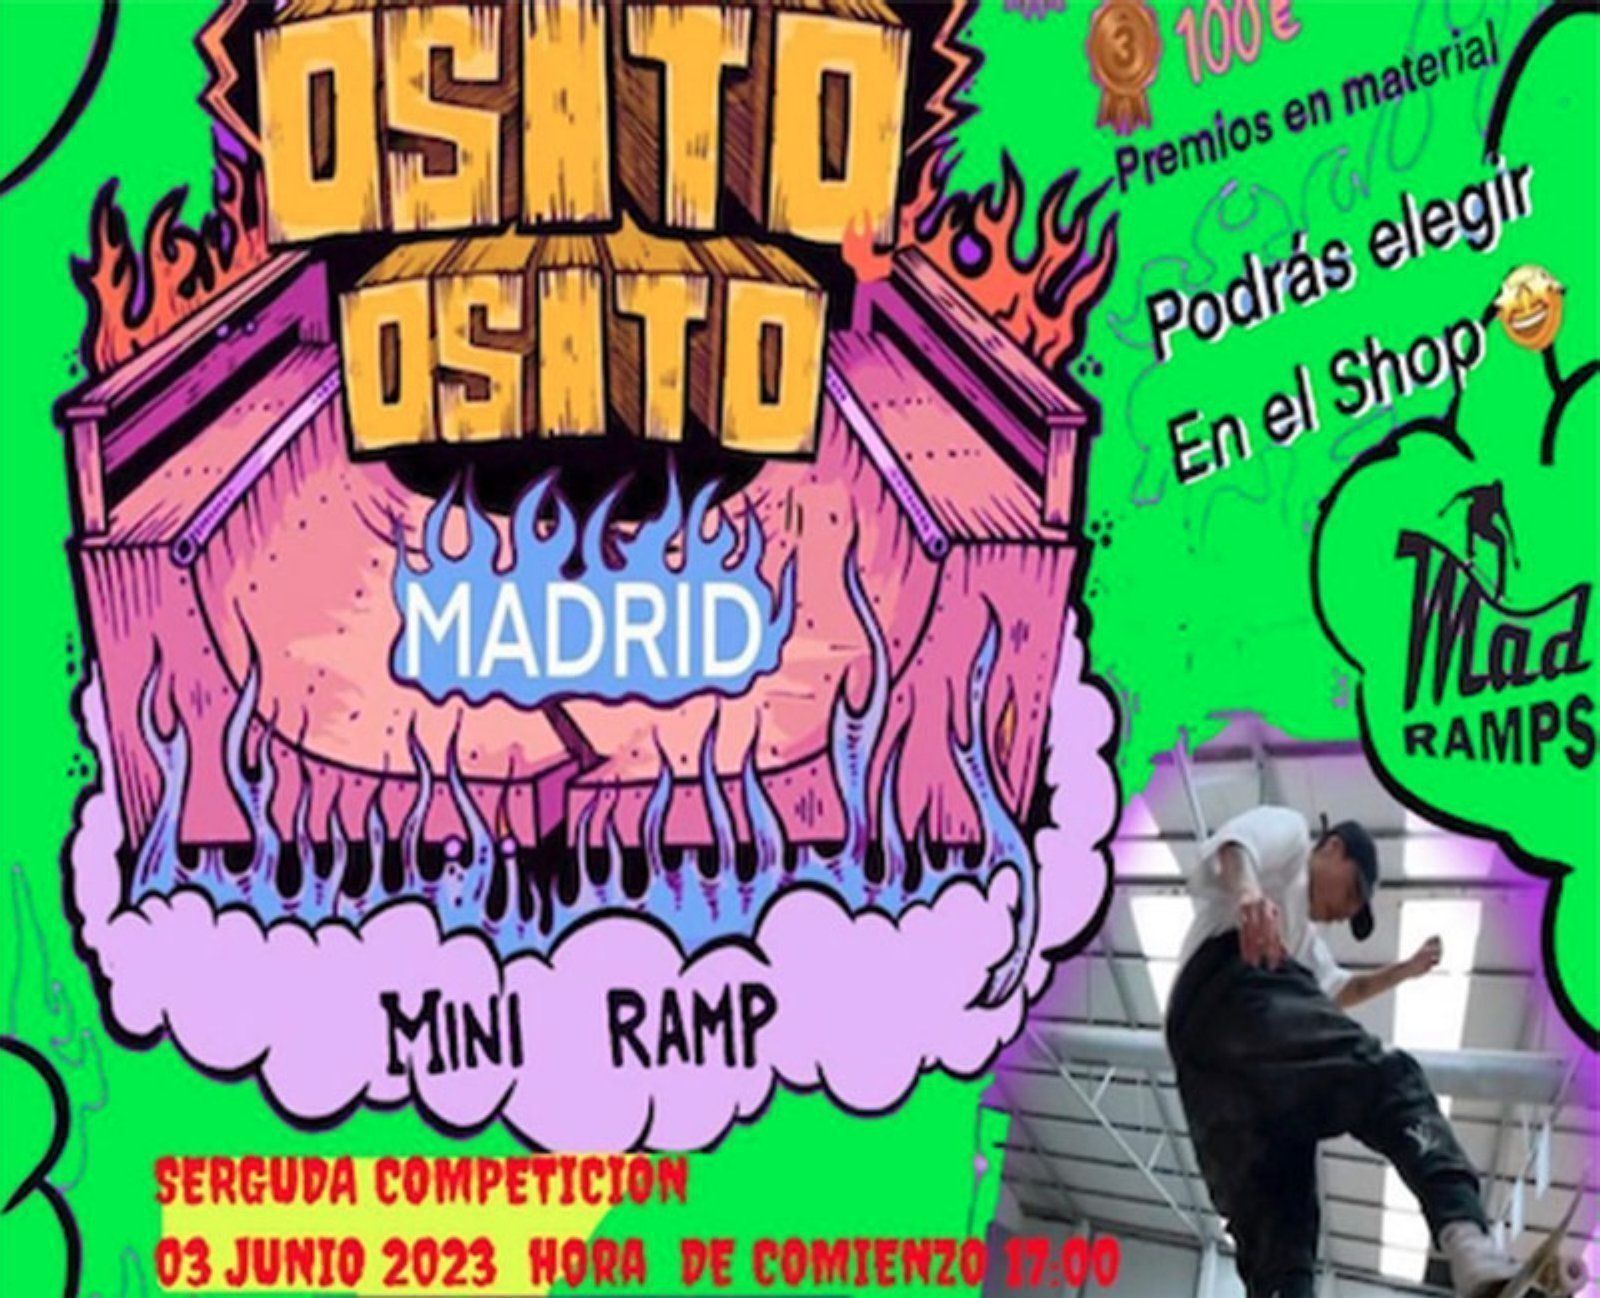 Game of Skate (Osito) en Madrid